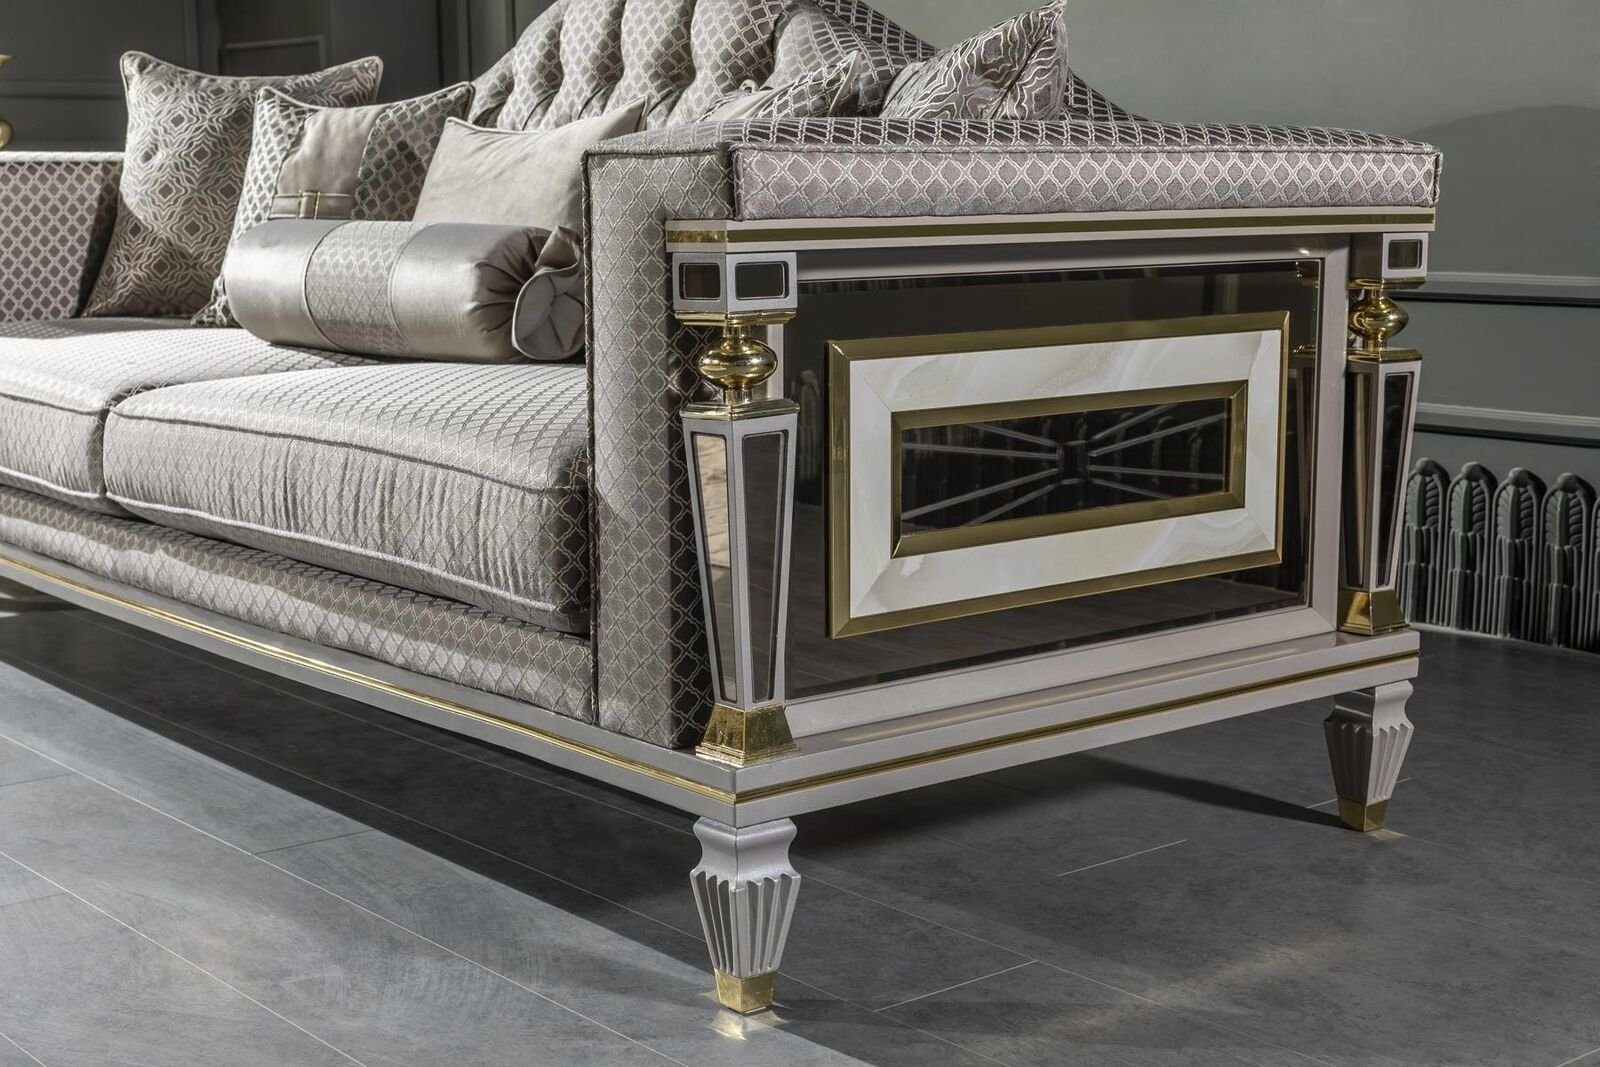 JVmoebel Sofa Couch Made Luxus Dreisitzer Sofa big in xxl Europe Möbel sofas, Silber couchen Grau